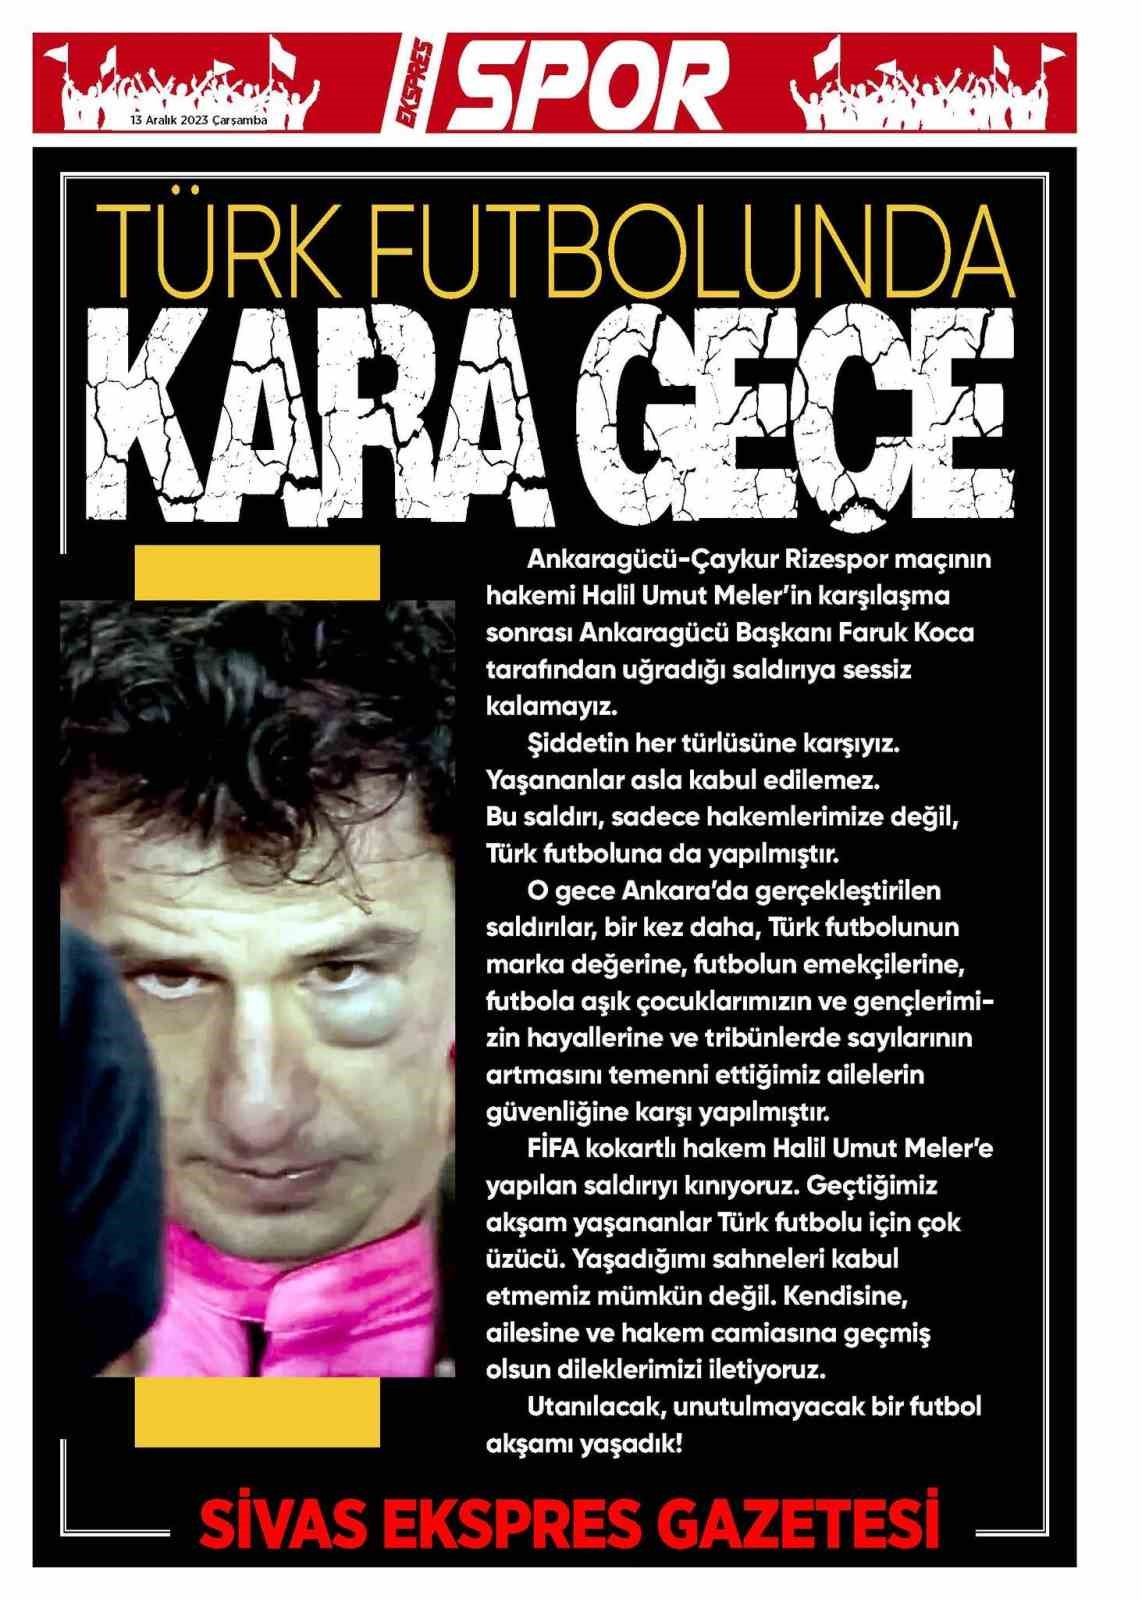 Sivas’ta yerel gazeteler, spor sayfalarını kararttı!